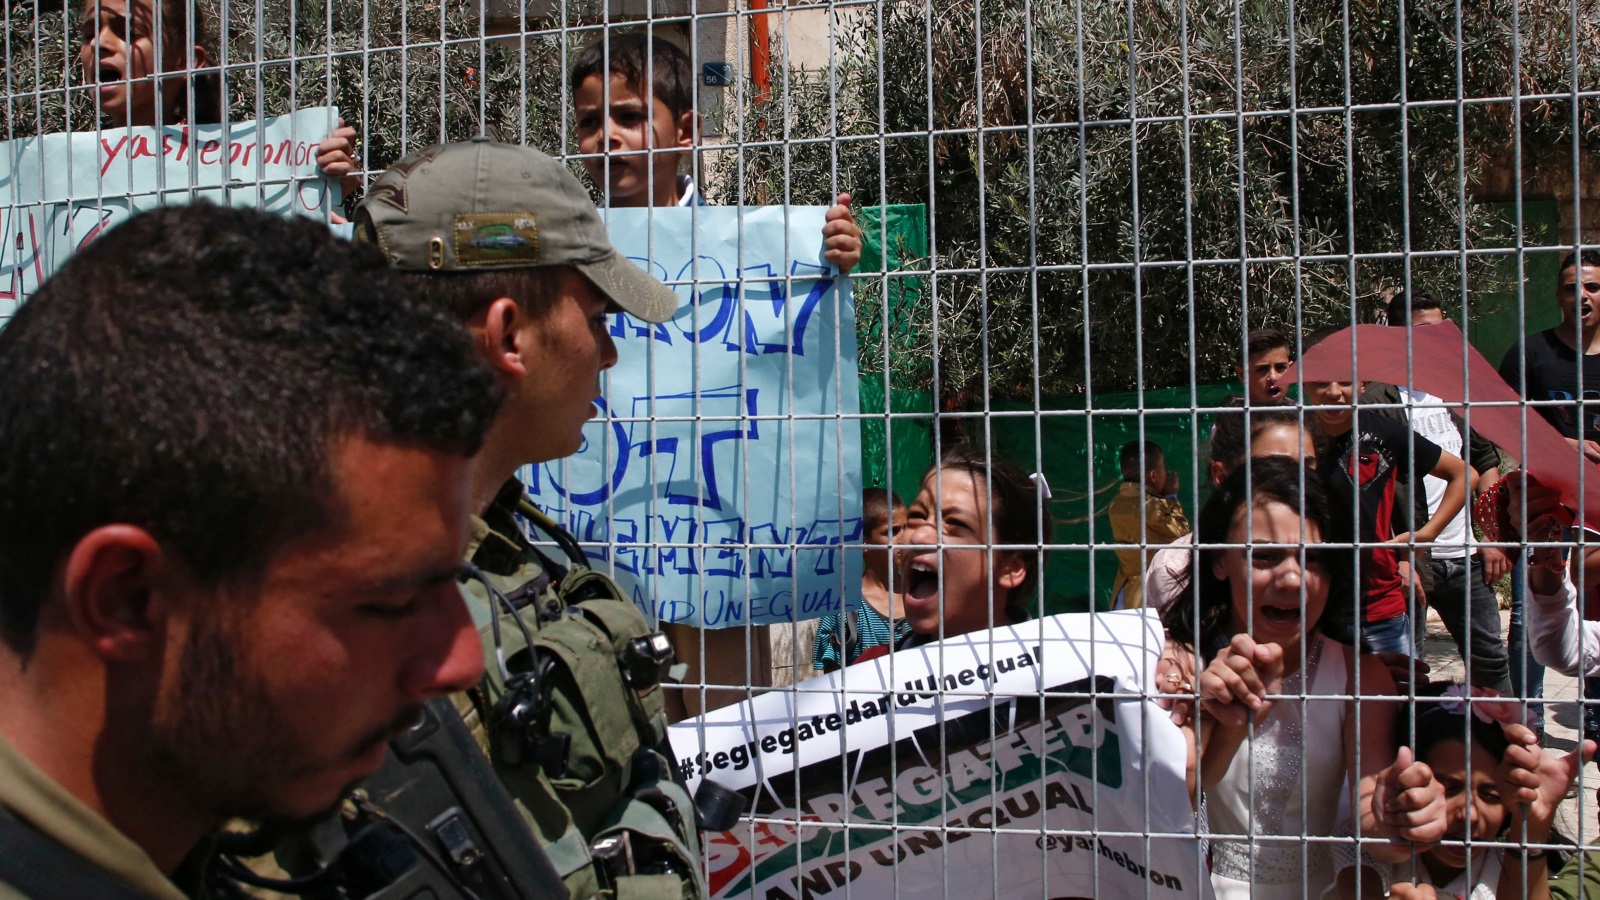 أطفال فلسطينيون شاركوا في الاحتجاج على قرار سلطات الاحتلال بشأن الخليل (غيتي)